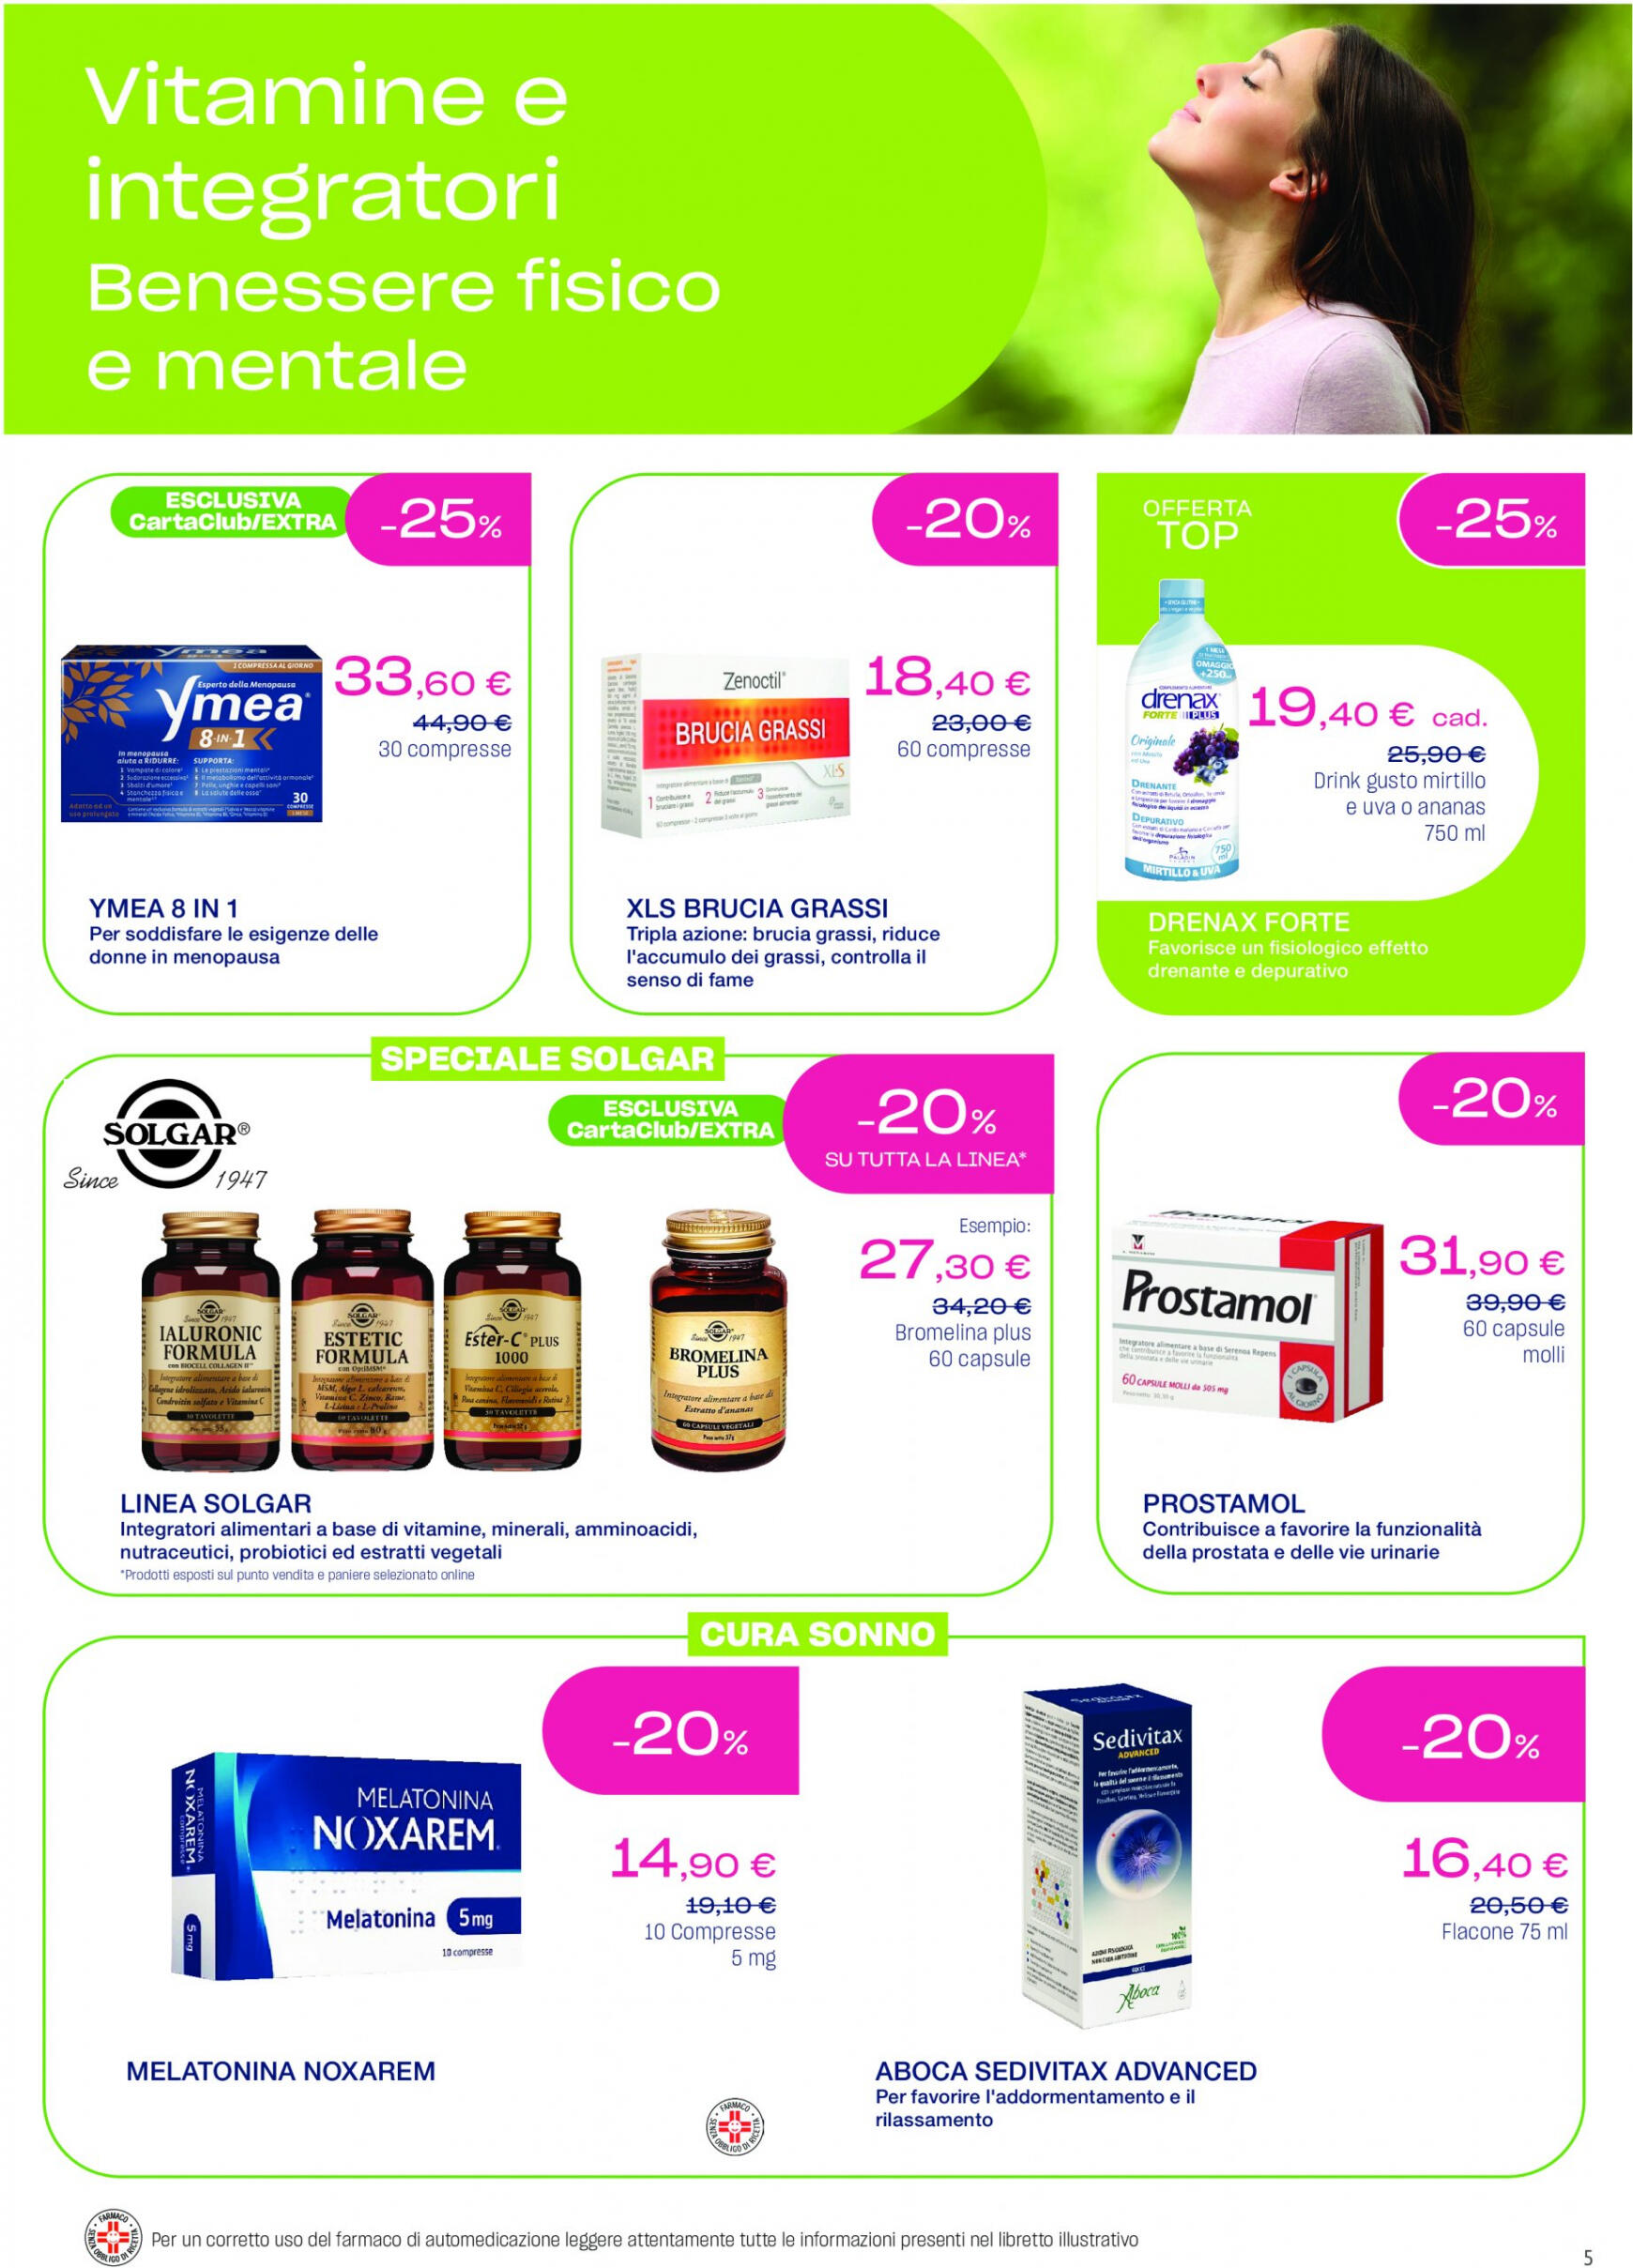 lloyds-farmacia - Nuovo volantino Lloyds Farmacia - Ad aprile metti in agenda la prevenzione! 27.03. - 01.05. - page: 5